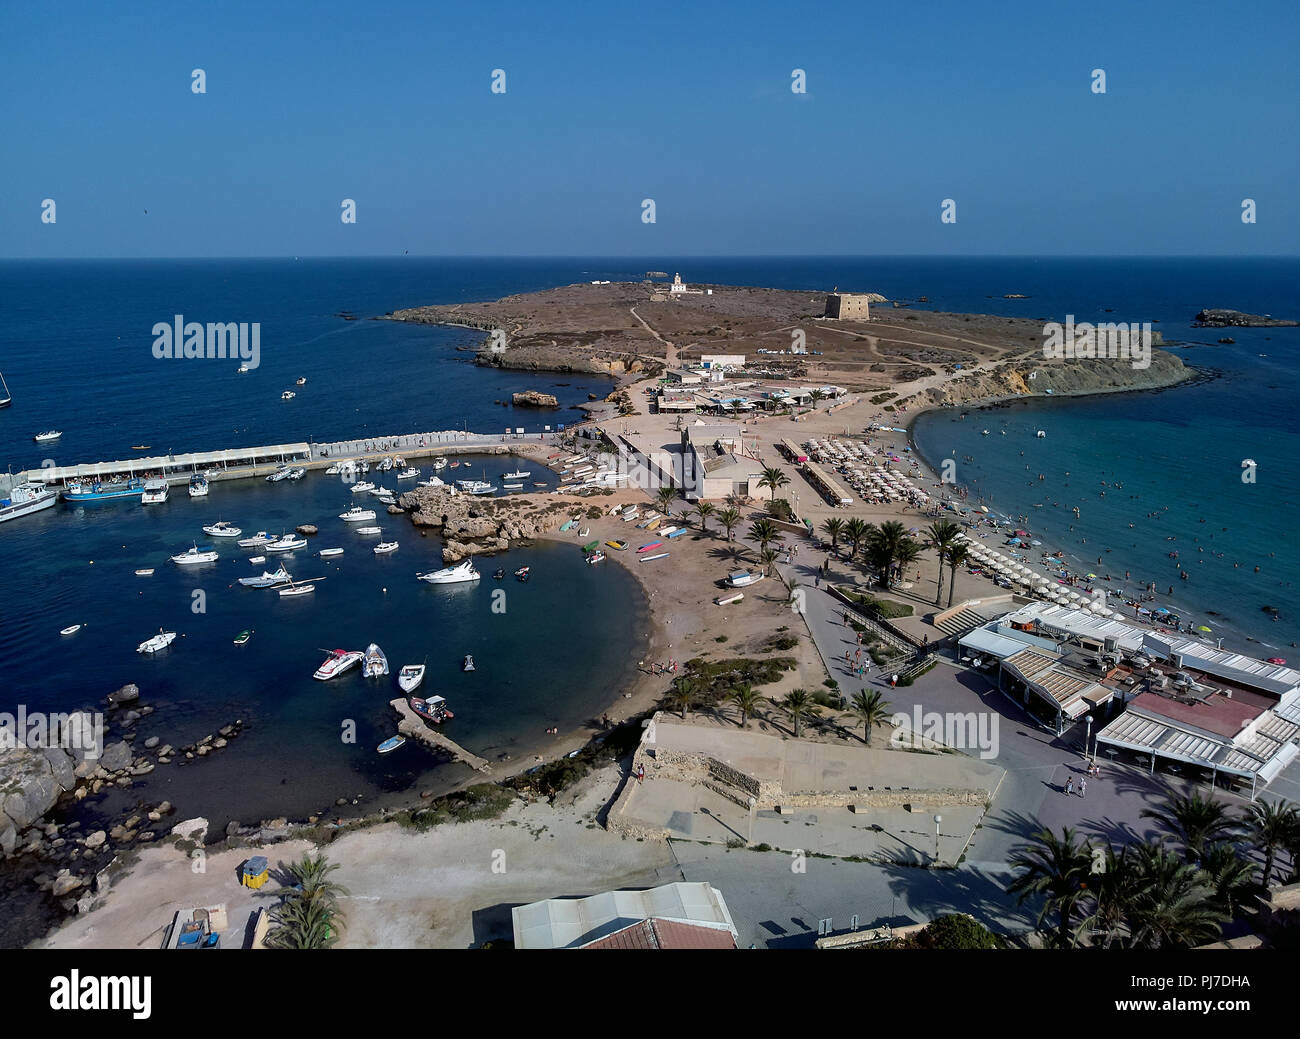 Vue aérienne de l'île de Tabarca. Harbour Marina, bateaux amarrés et plage de galets. Les voyageurs, les vacanciers bronzer et nager dans la Méditerranée se Banque D'Images